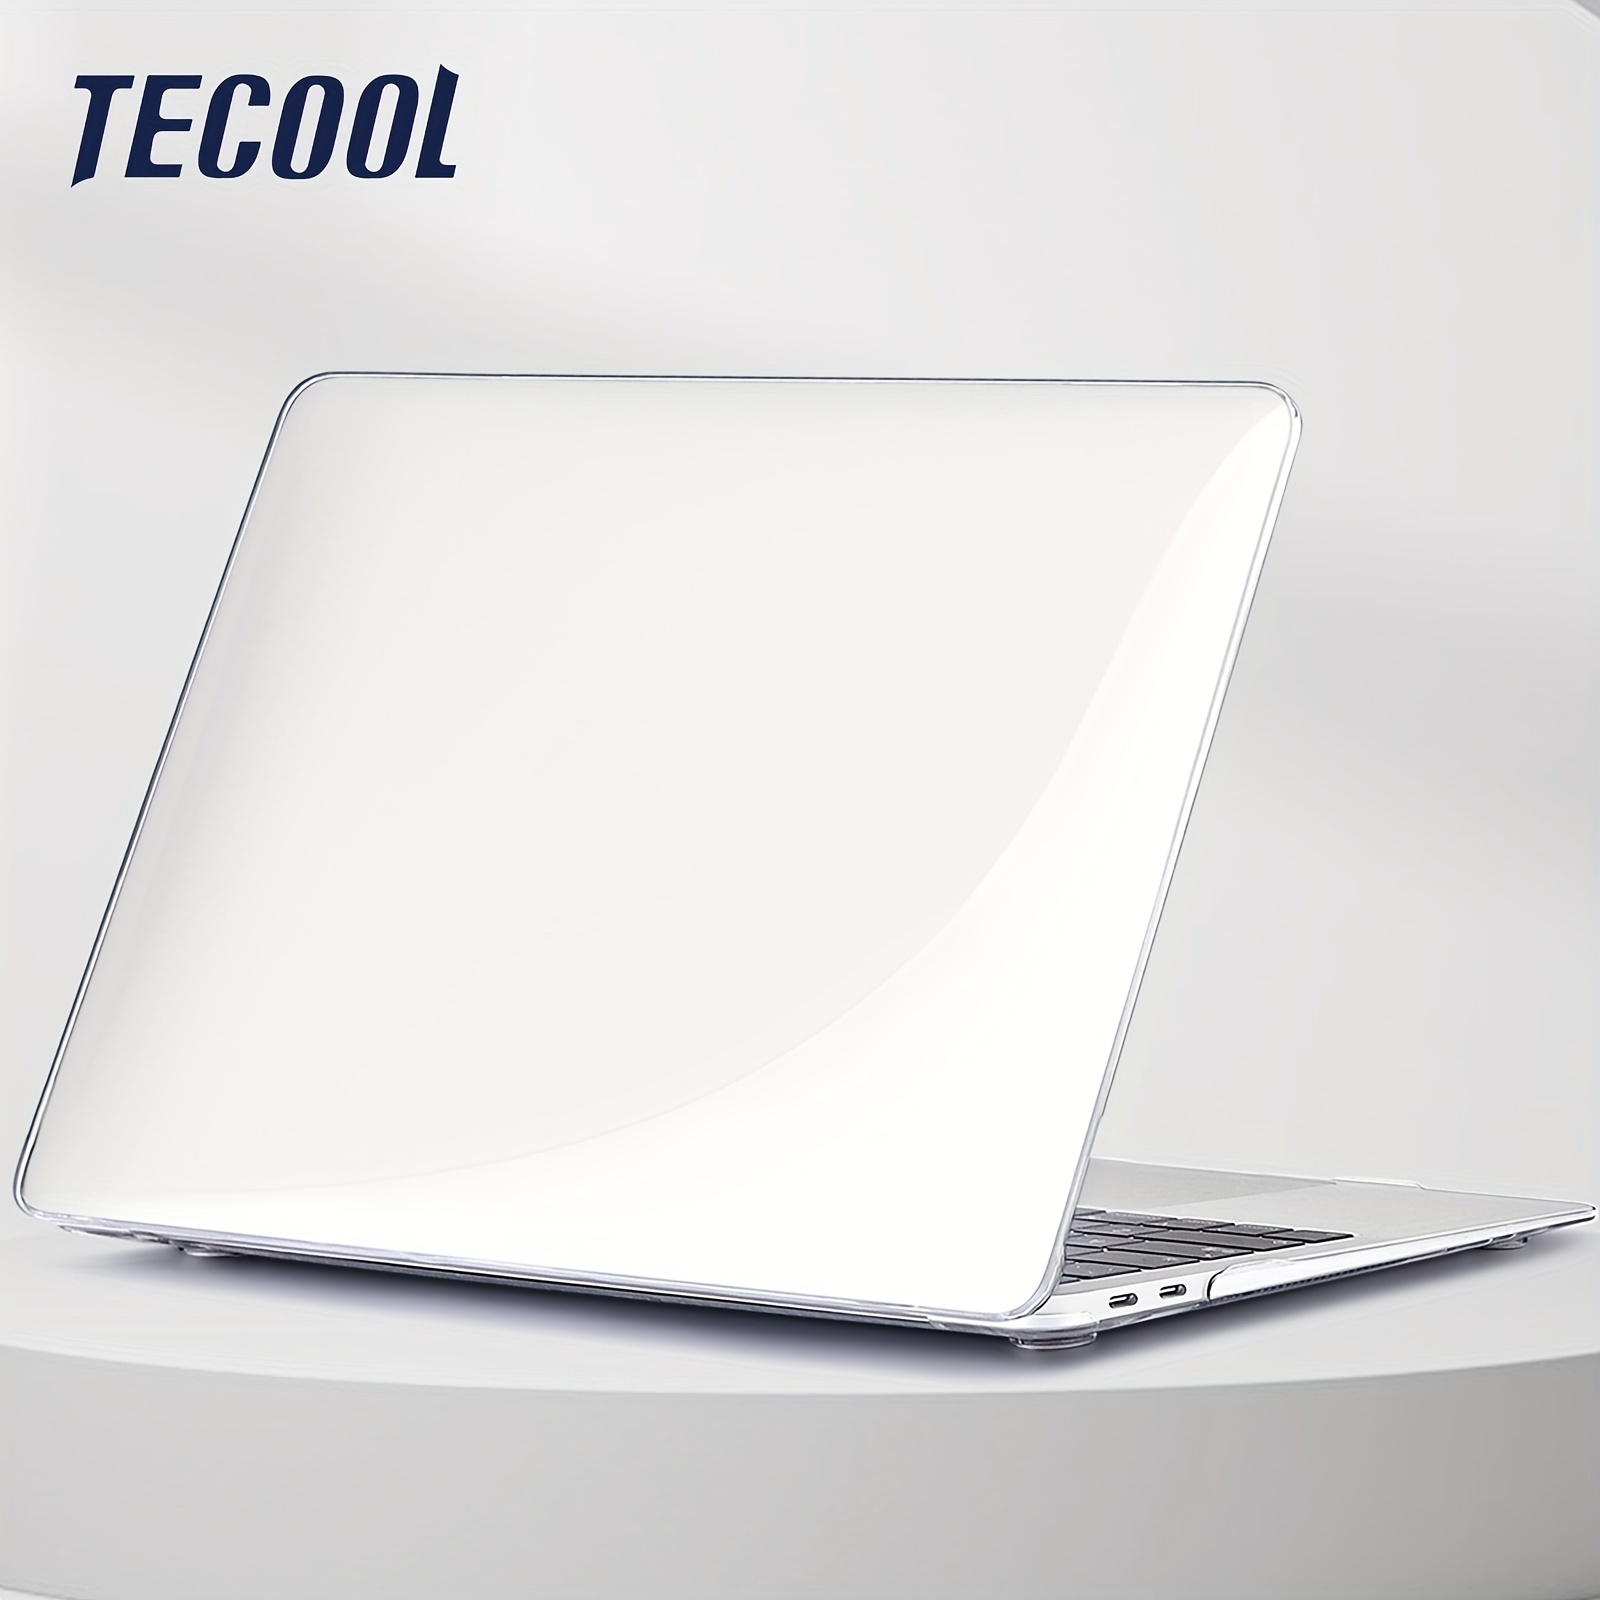 TECOOL Coque MacBook Air M1  Retina 13 Pouces 2020 2019 2018